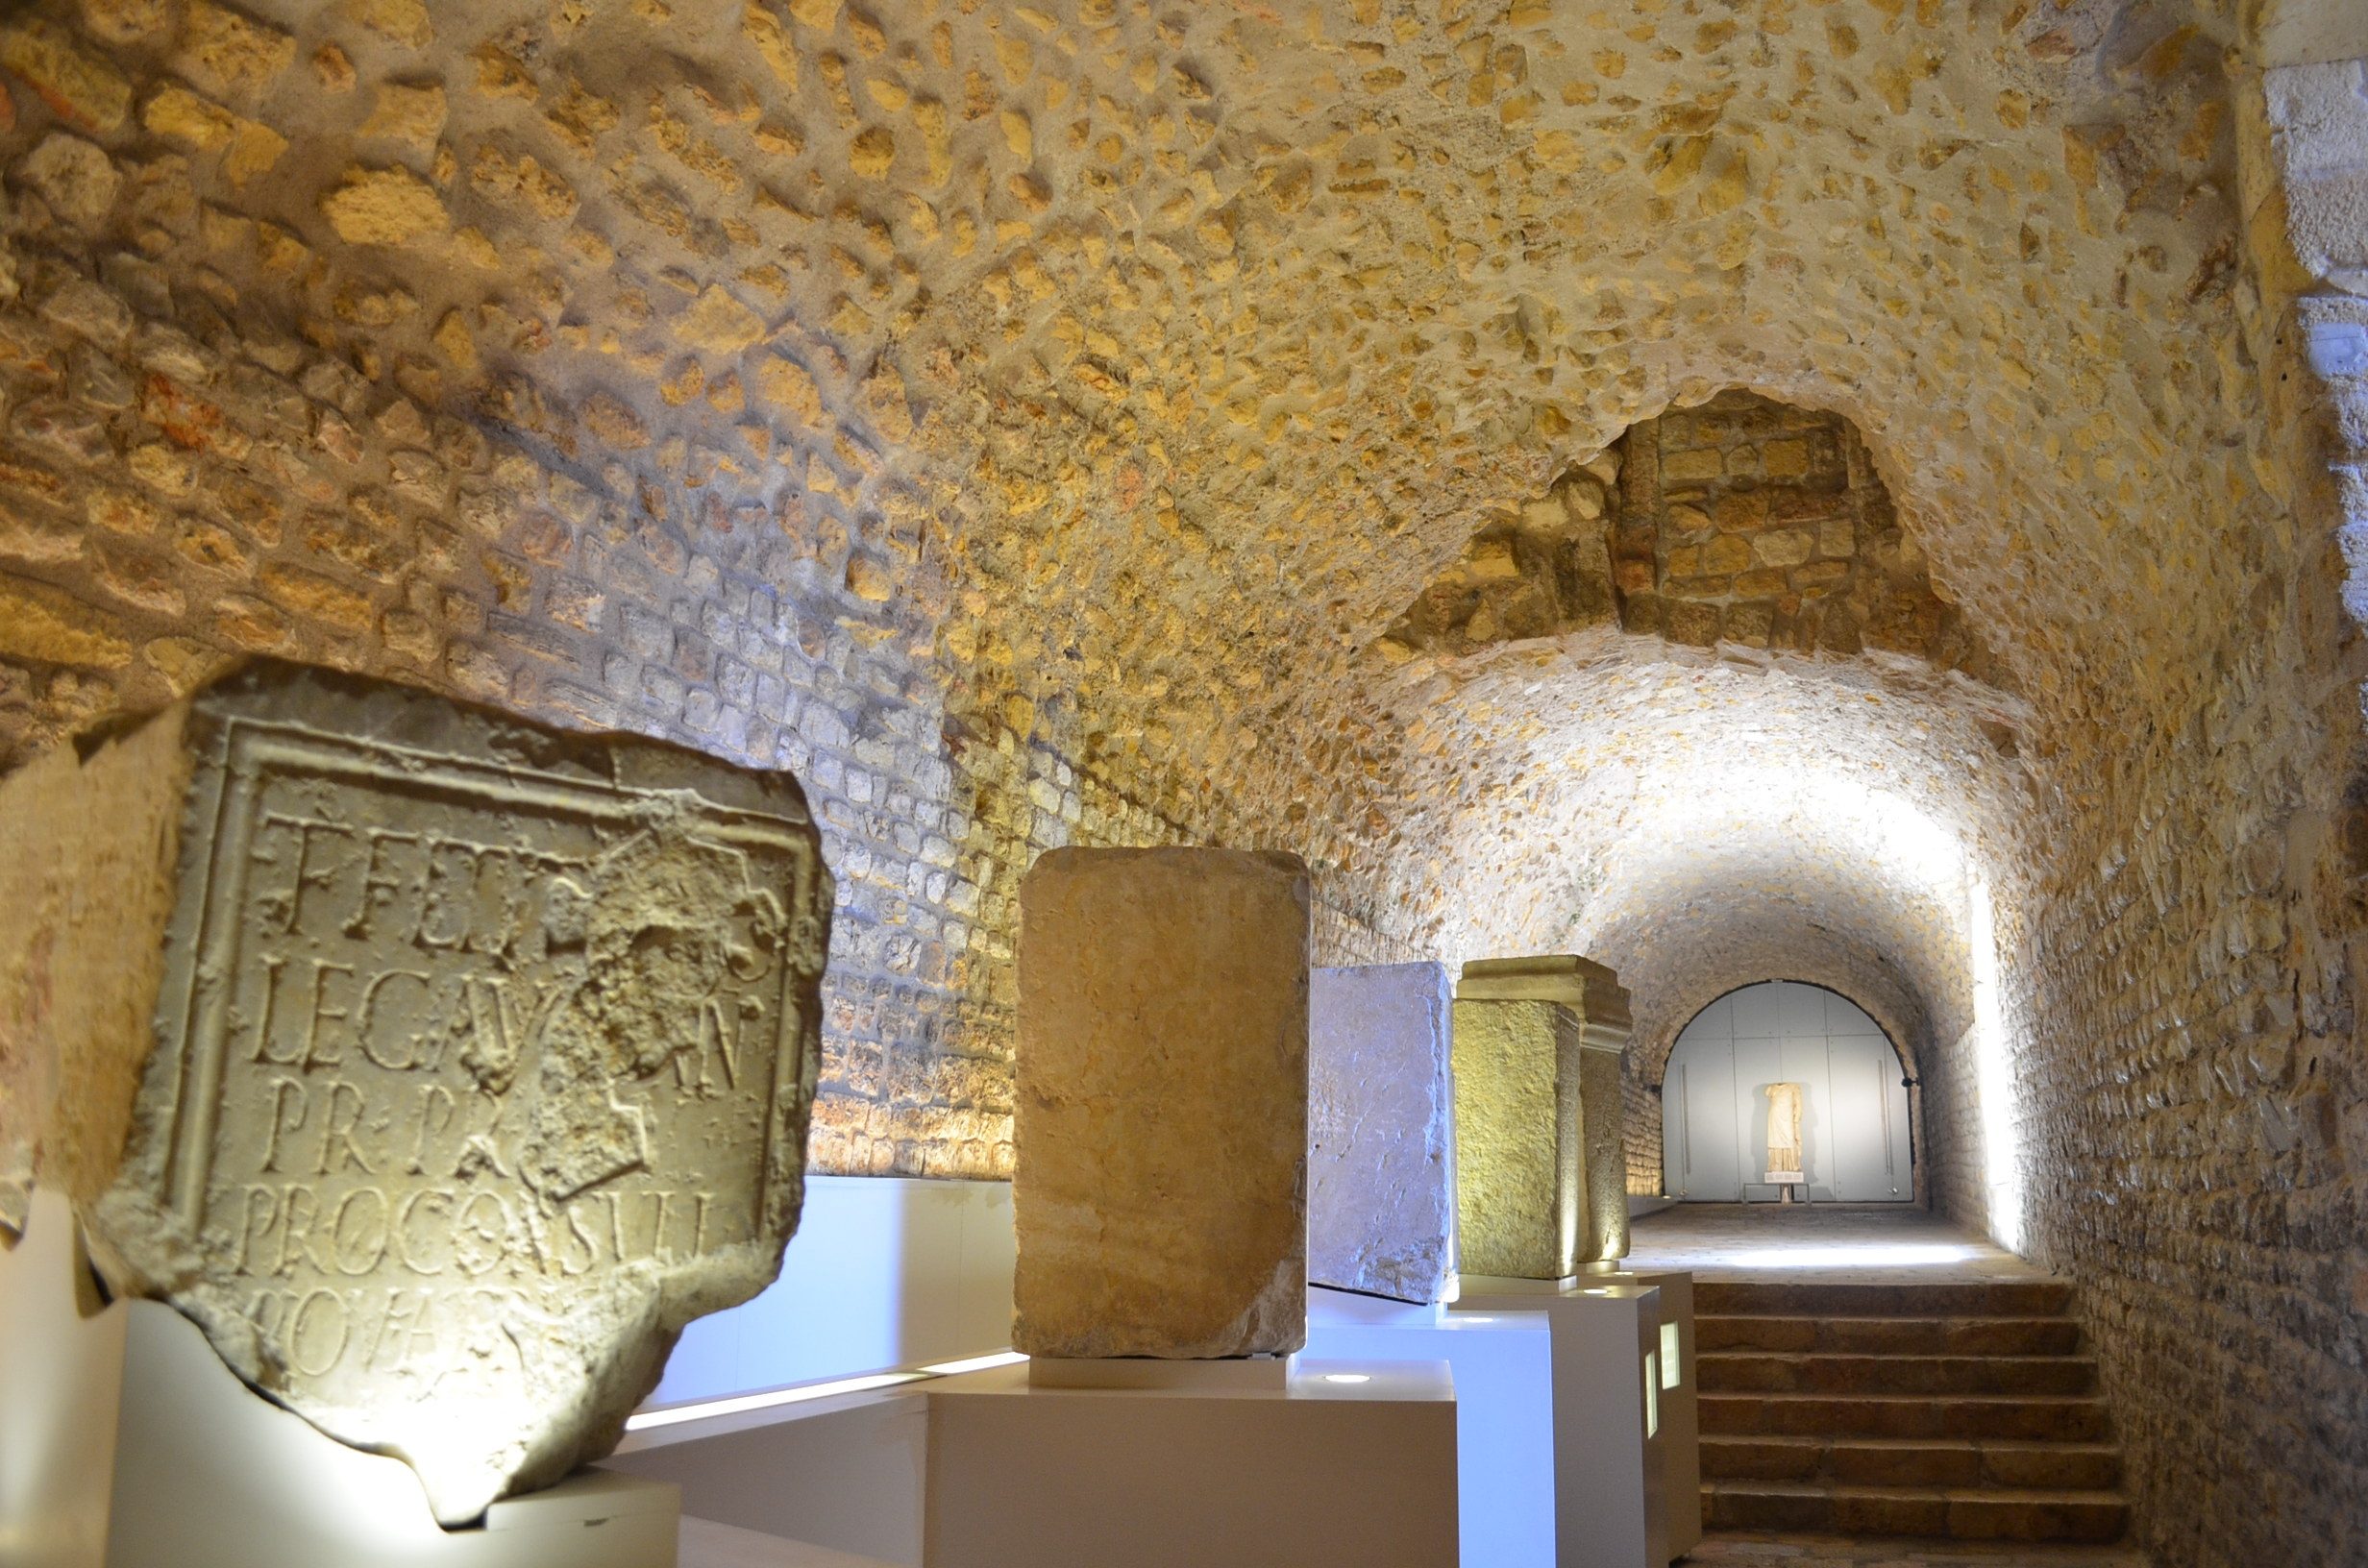  3 bonnes raisons d'aller à Tarragone/aufildeslieux.fr/Musée national d'archéologie©K.Hibbs